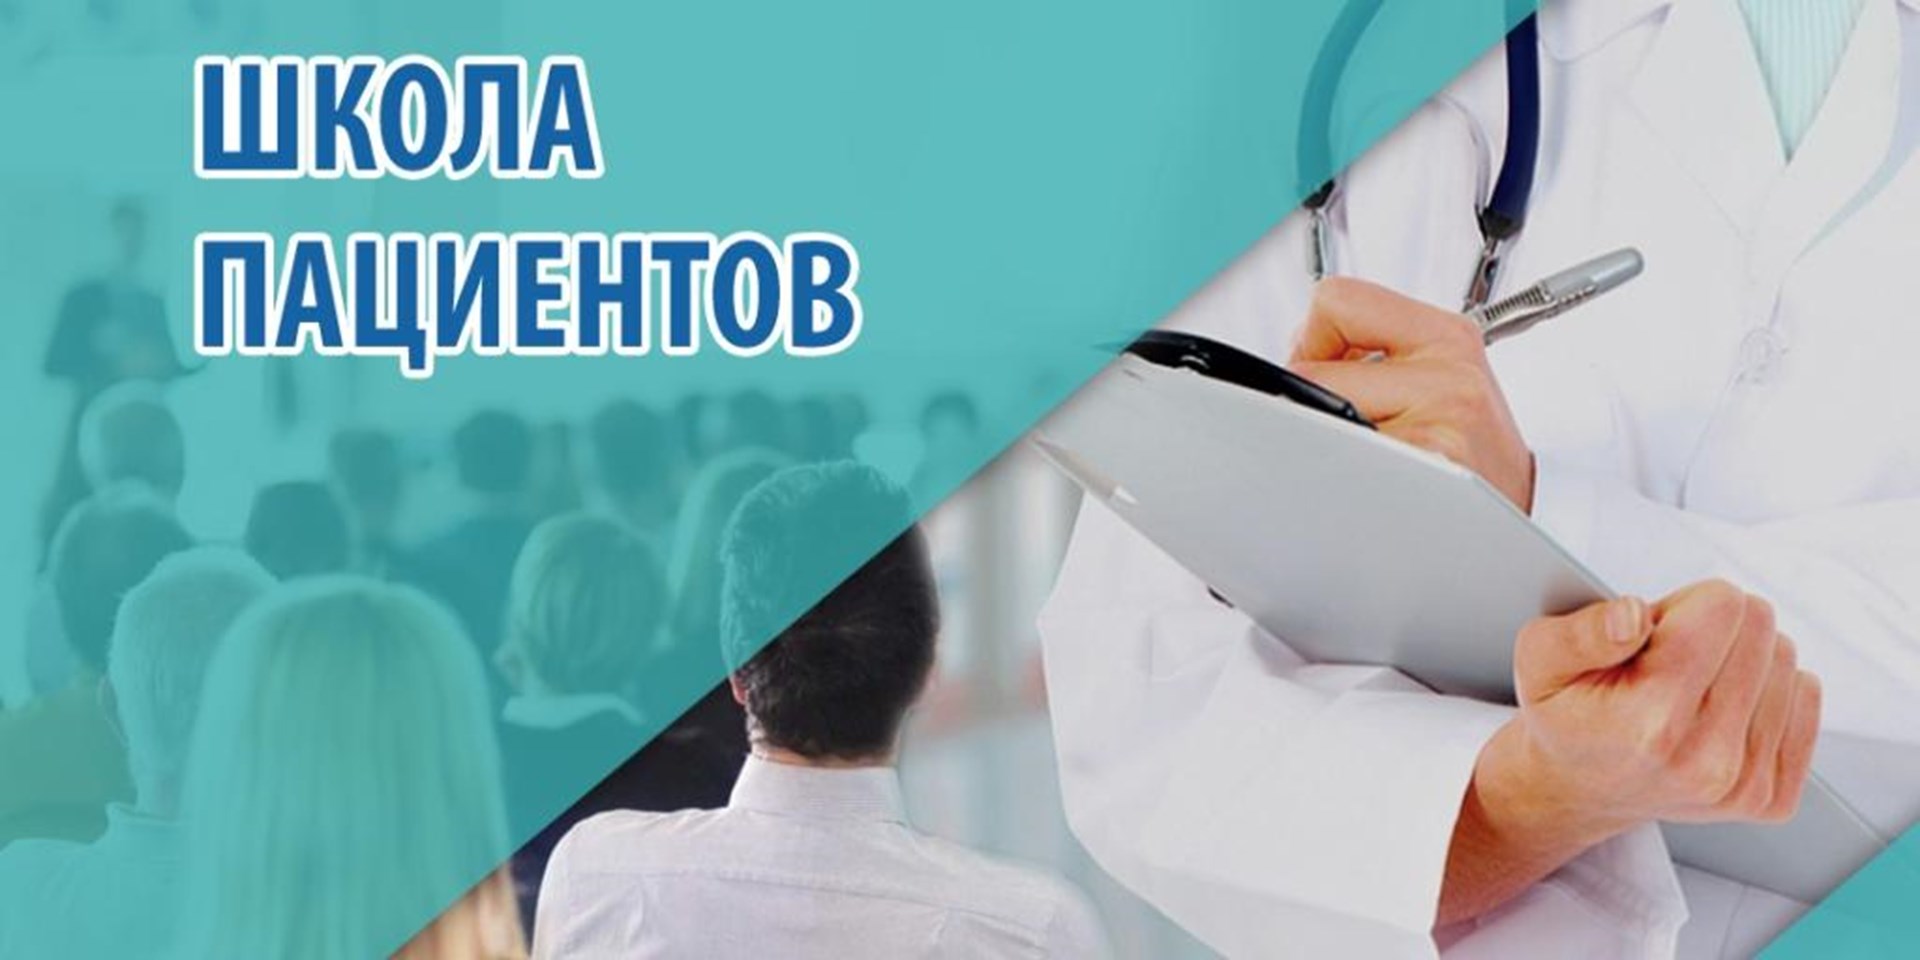 20 декабря 2022 года в Перми состоится Школа пациентов